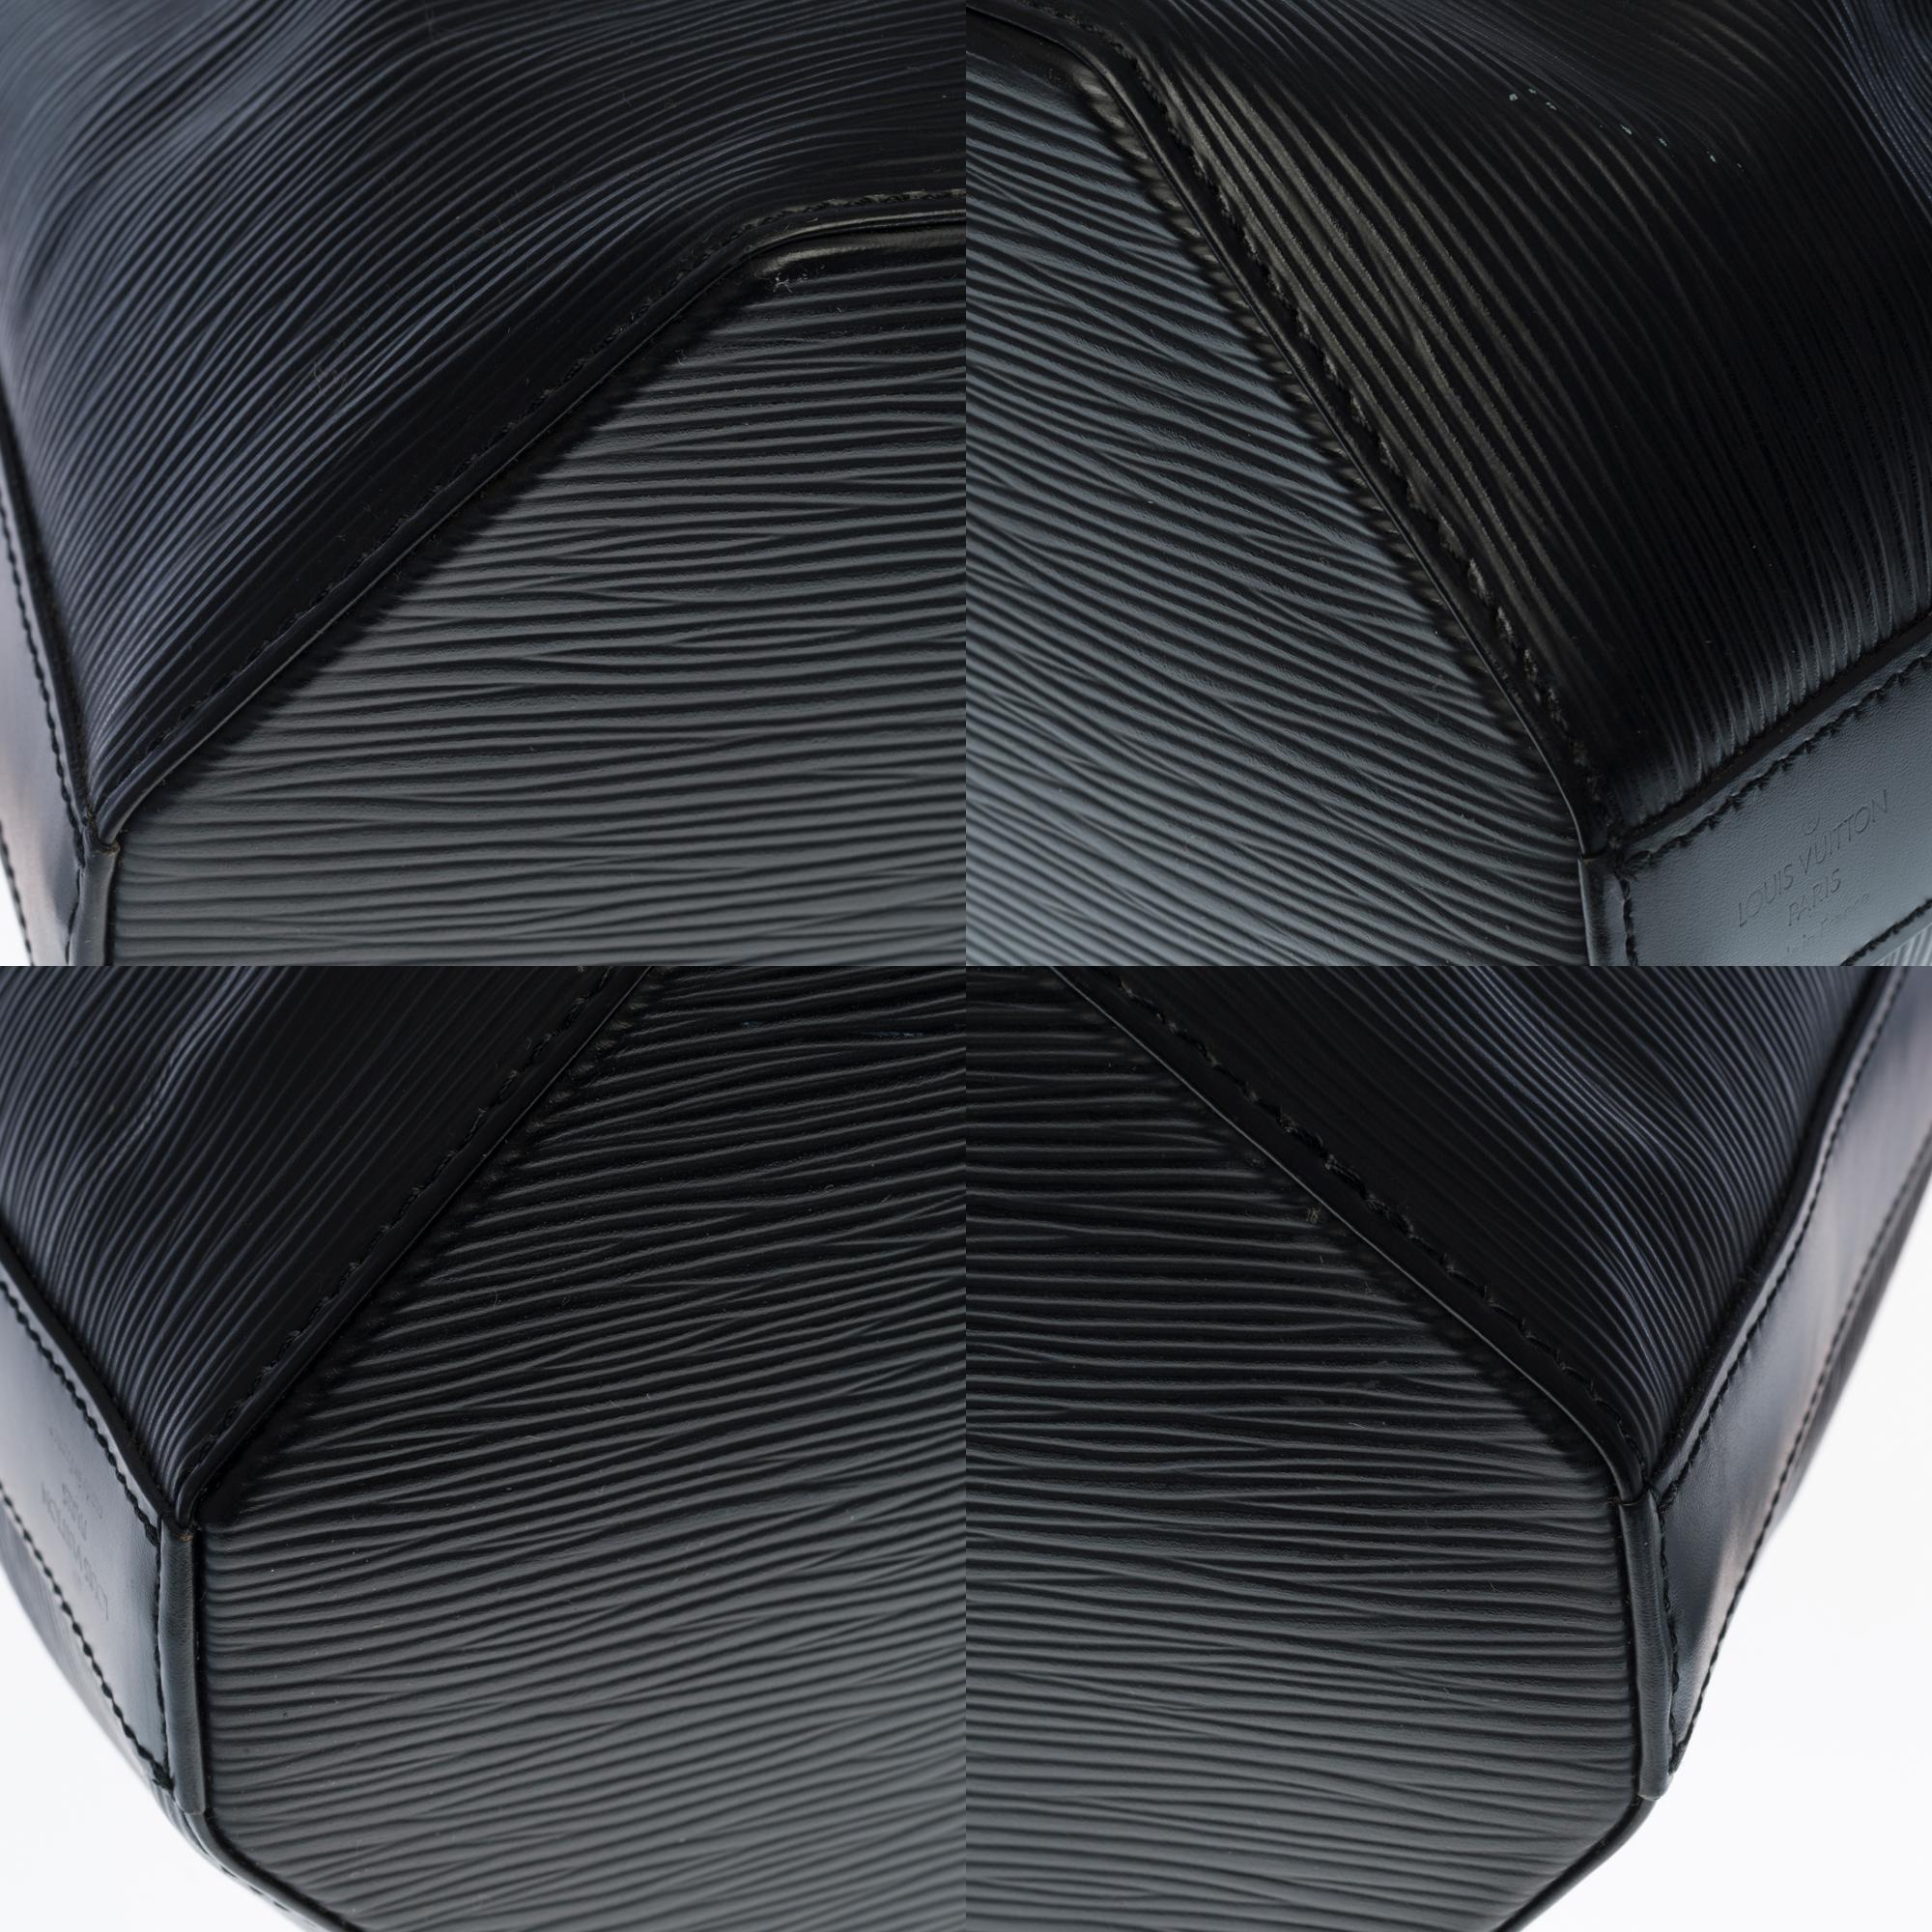 Louis Vuitton Sac d'épaule Backpack in black épi leather, SHW 4